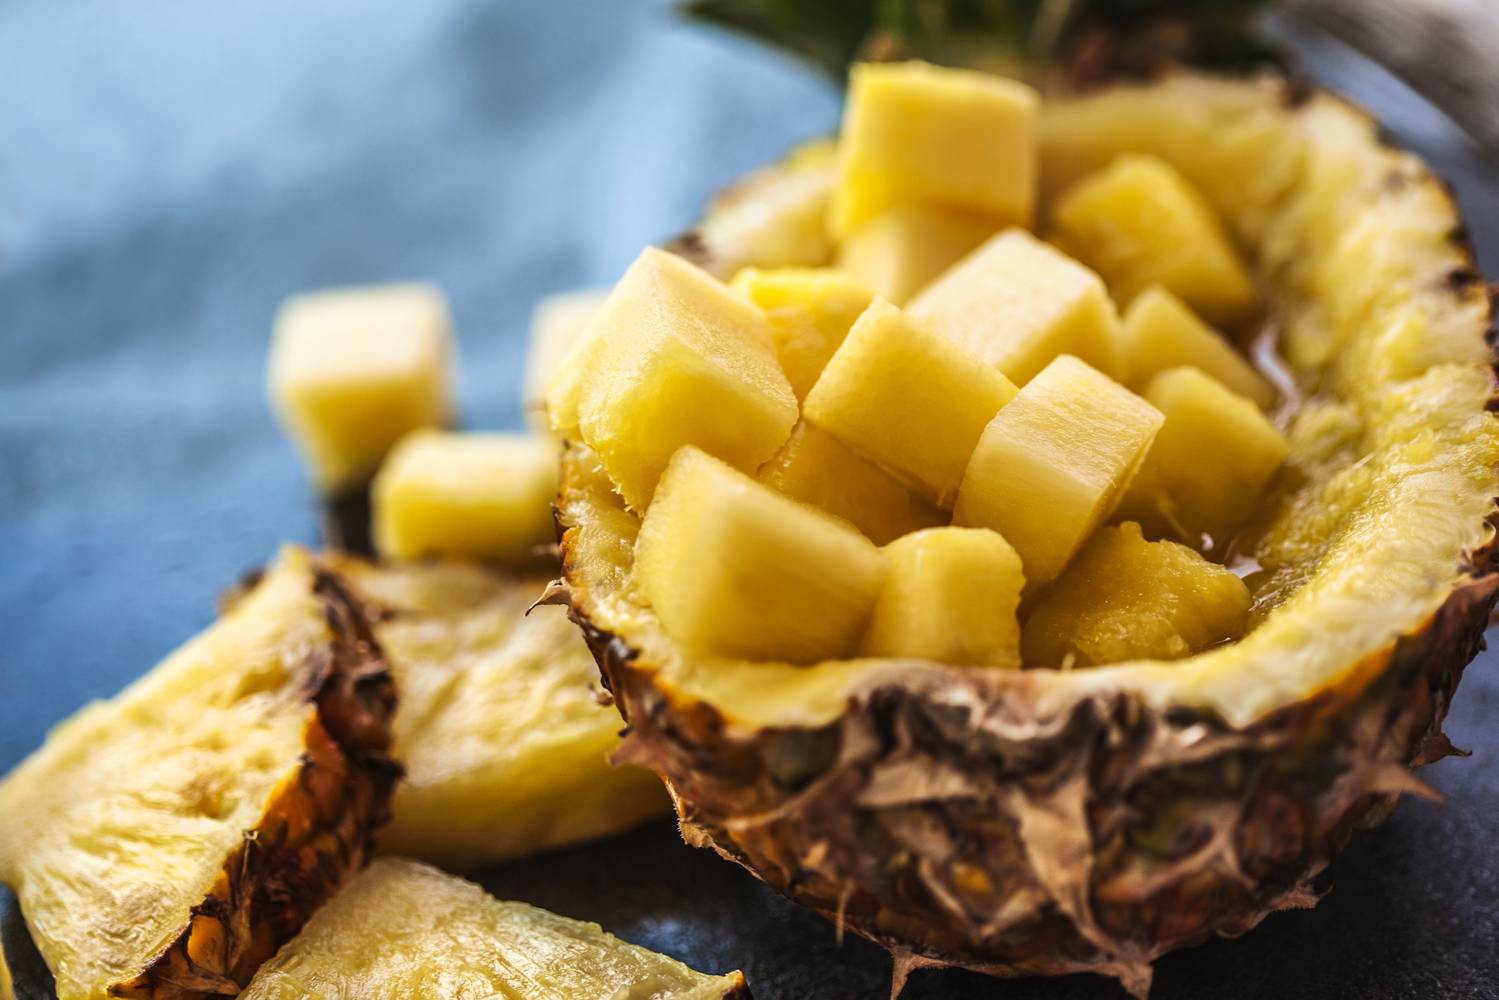 Az ananász, főleg frissen fogyasztva jelentős szerotonintartalommal rendelkezik, így javíthatja a hangulatot. Ez a gyümölcs más áldásos tulajdonságokkal is bír, mint például C-vitaminban és antioxidánsokban gazdag, ami erősebbé teheti az immunrendszert.